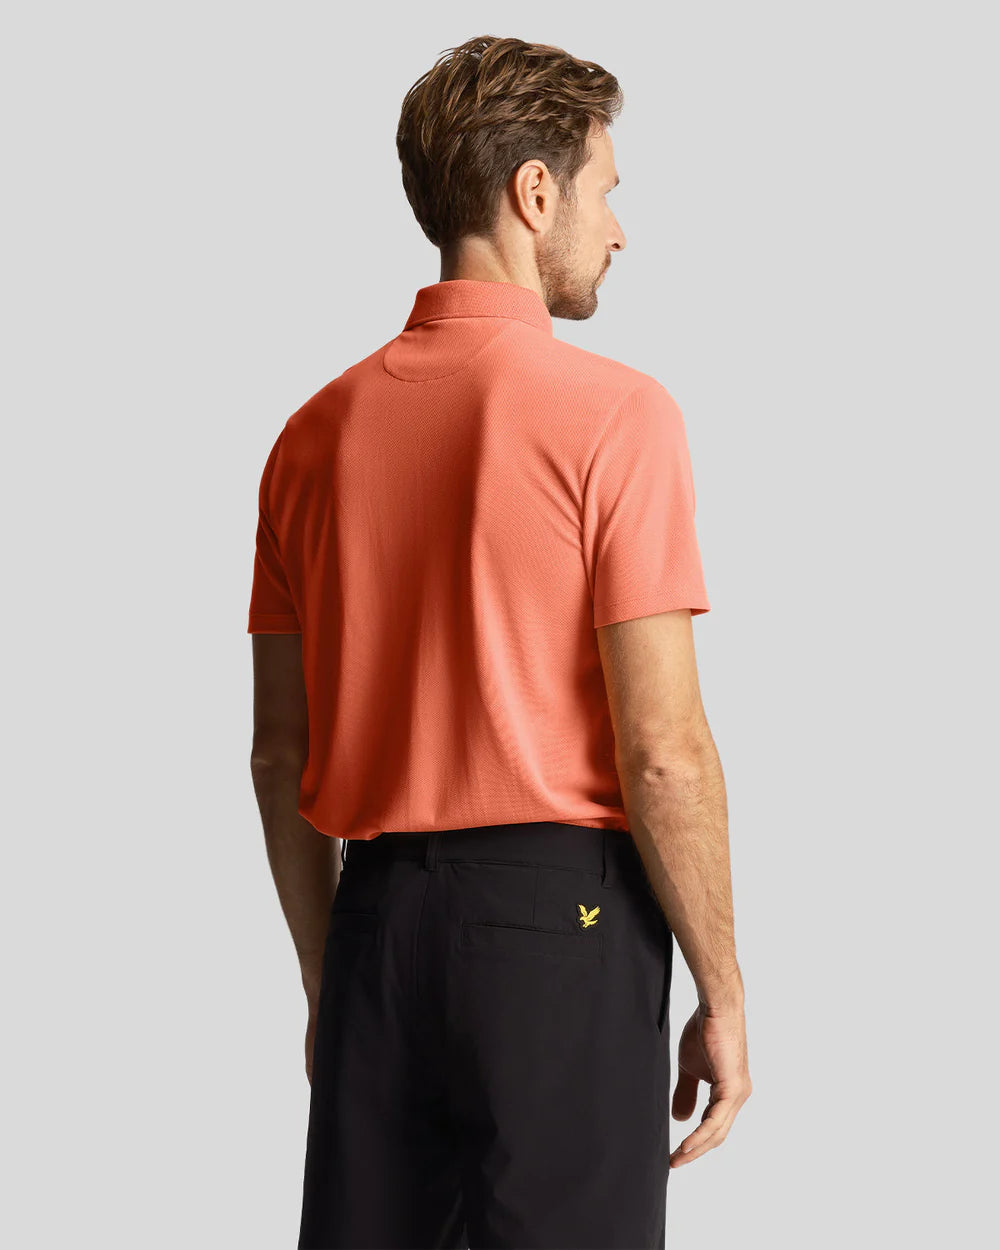 Golf Tech Polo Shirt - Course Coral